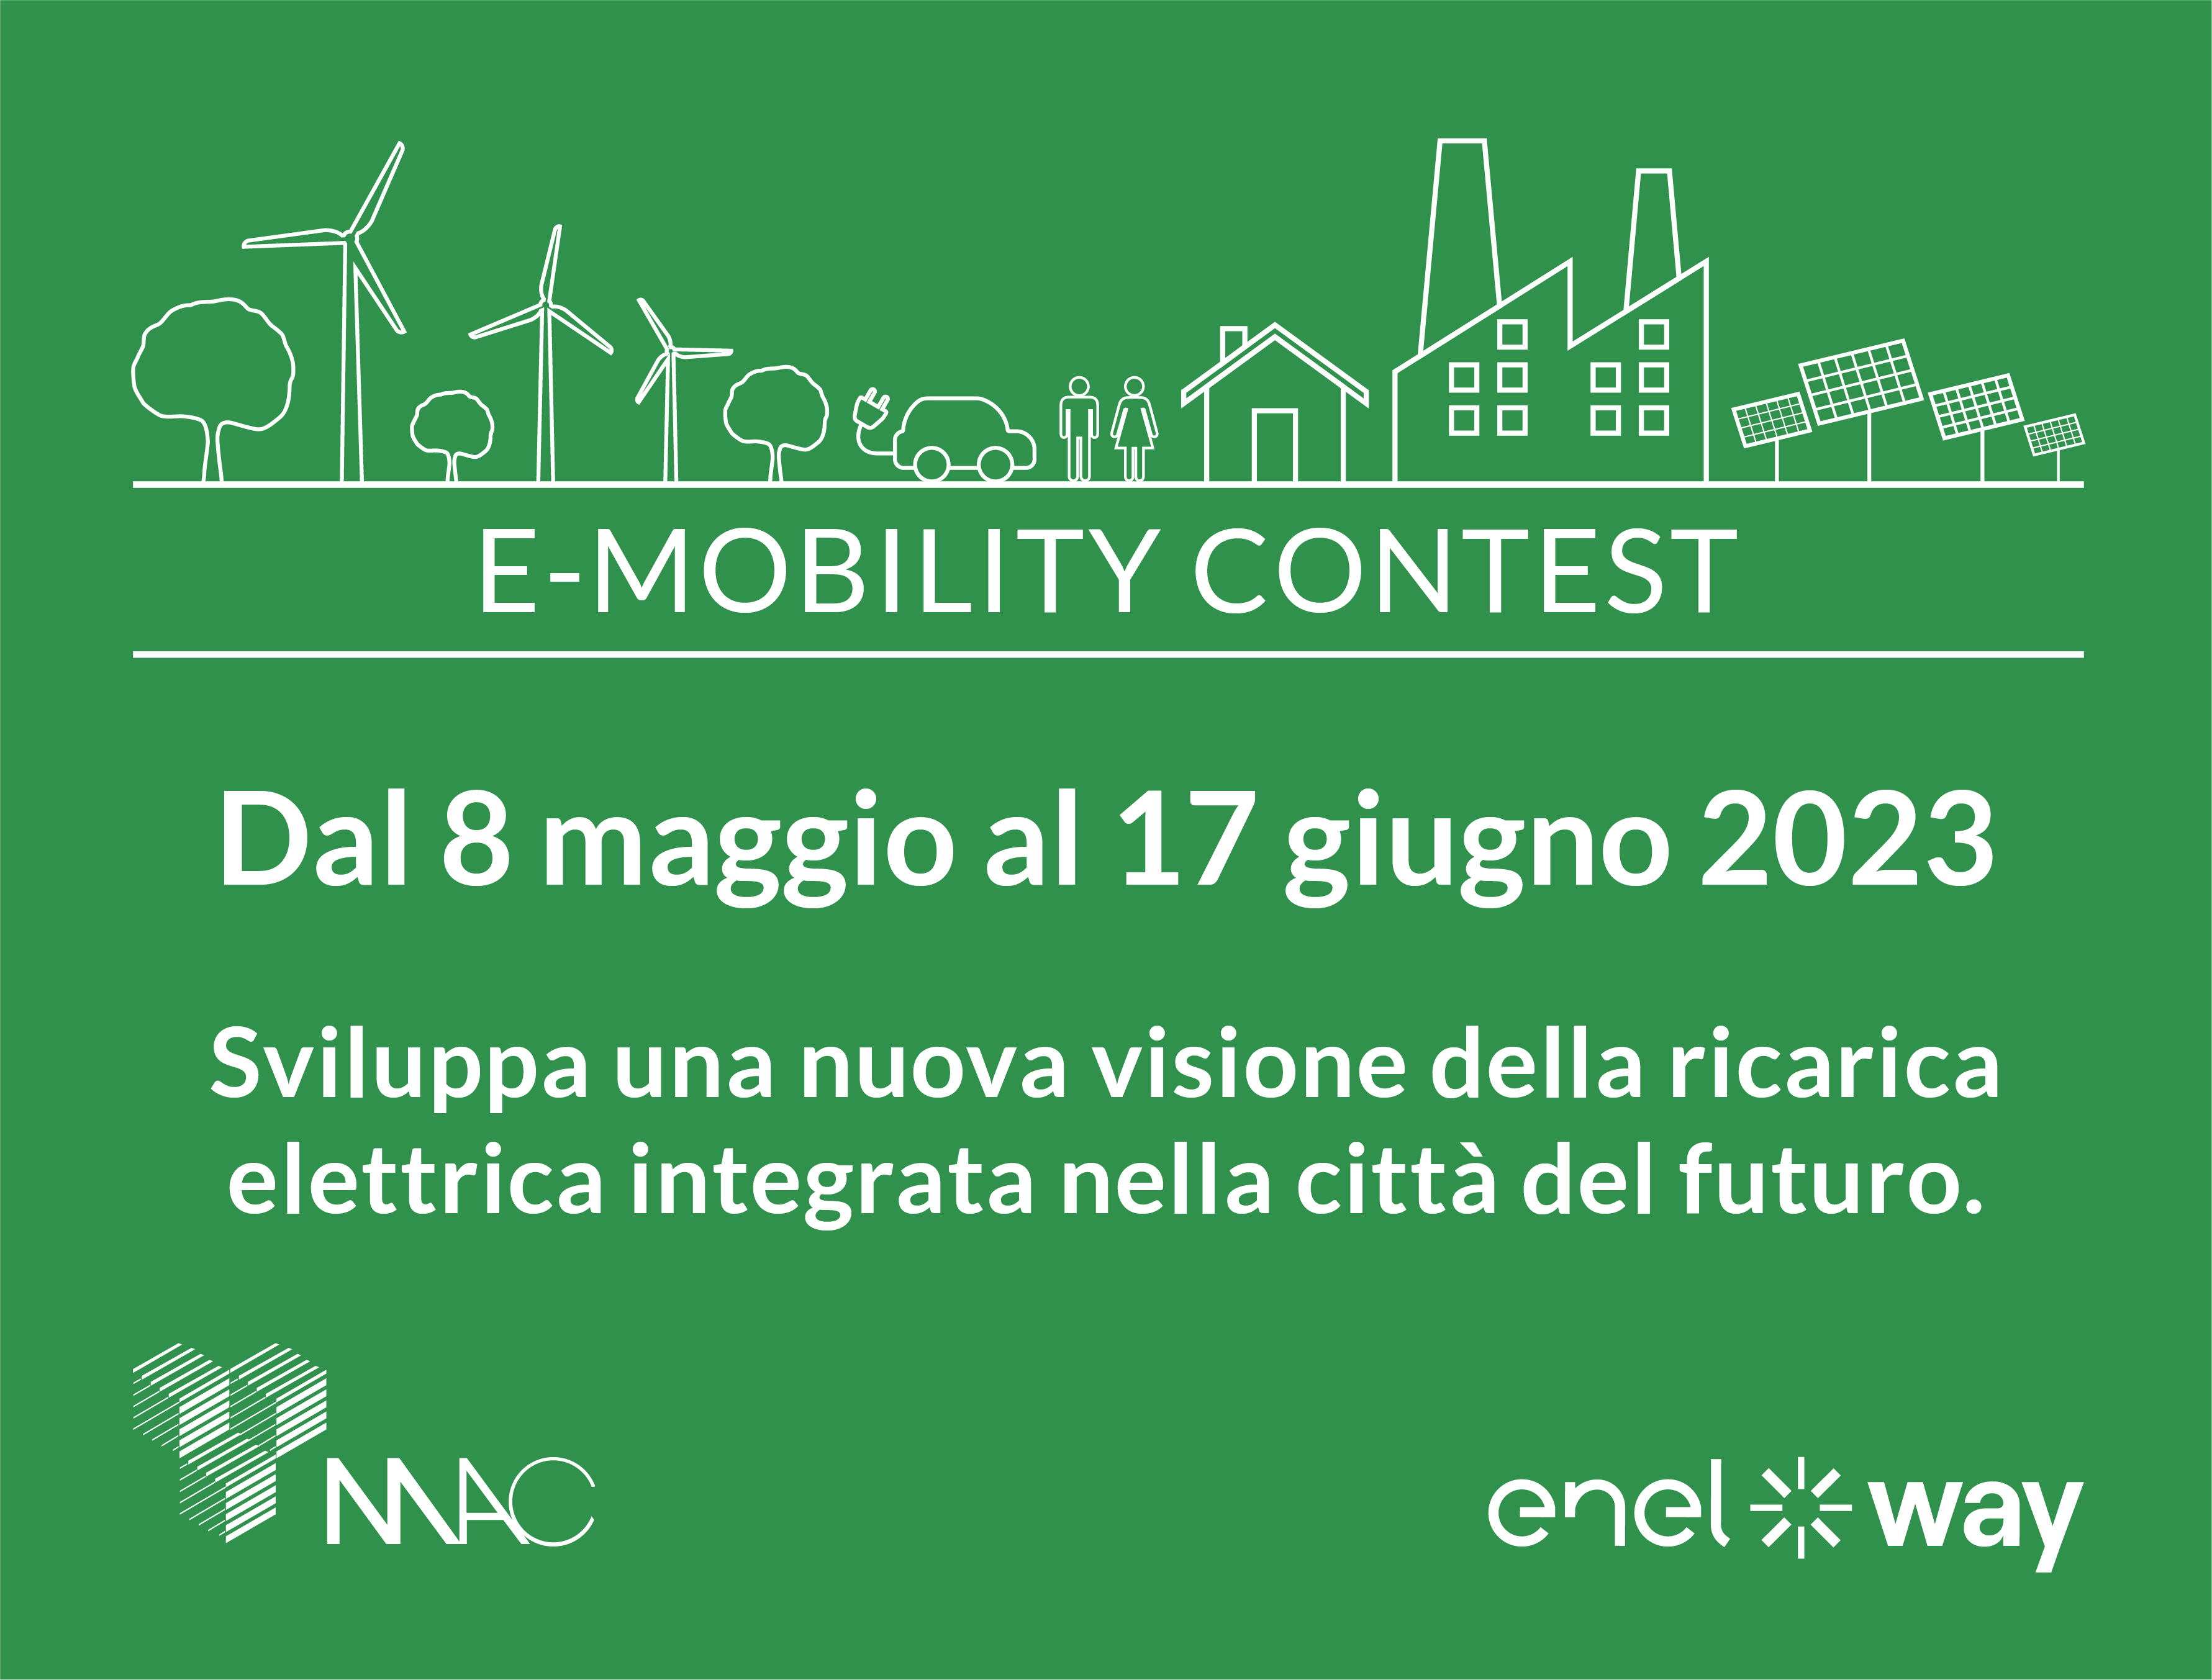 E-Mobility Contest: Sviluppa una nuova visione della ricarica elettrica integrata nella città del futuro